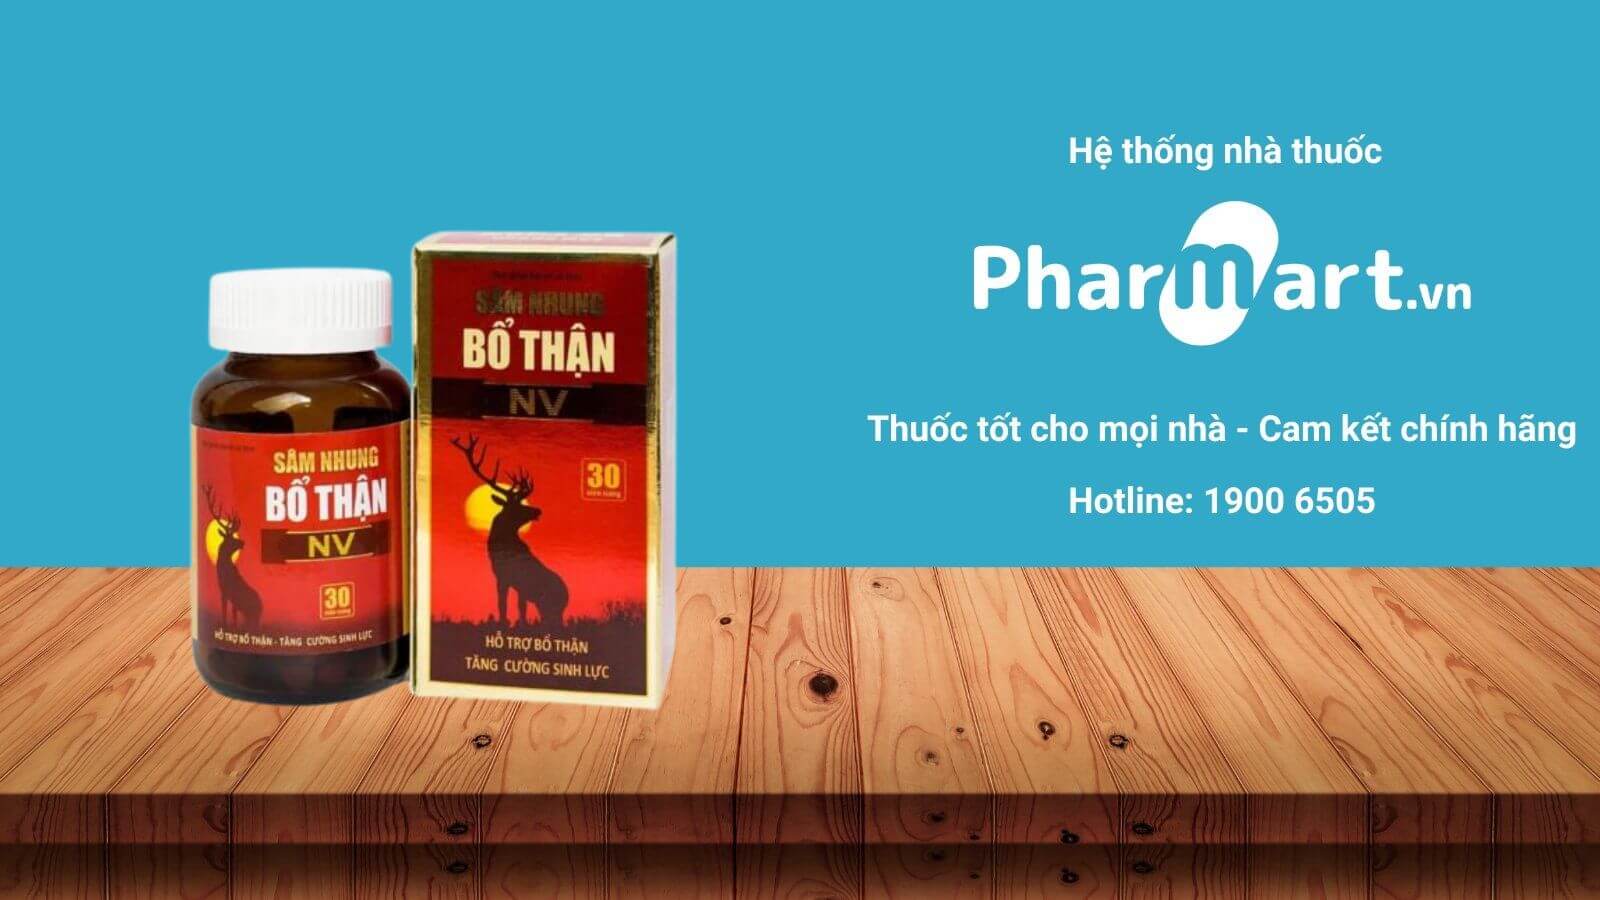 Liên hệ Pharmart.vn để đảm bảo mua Sâm nhung bổ thận NV chính hãng